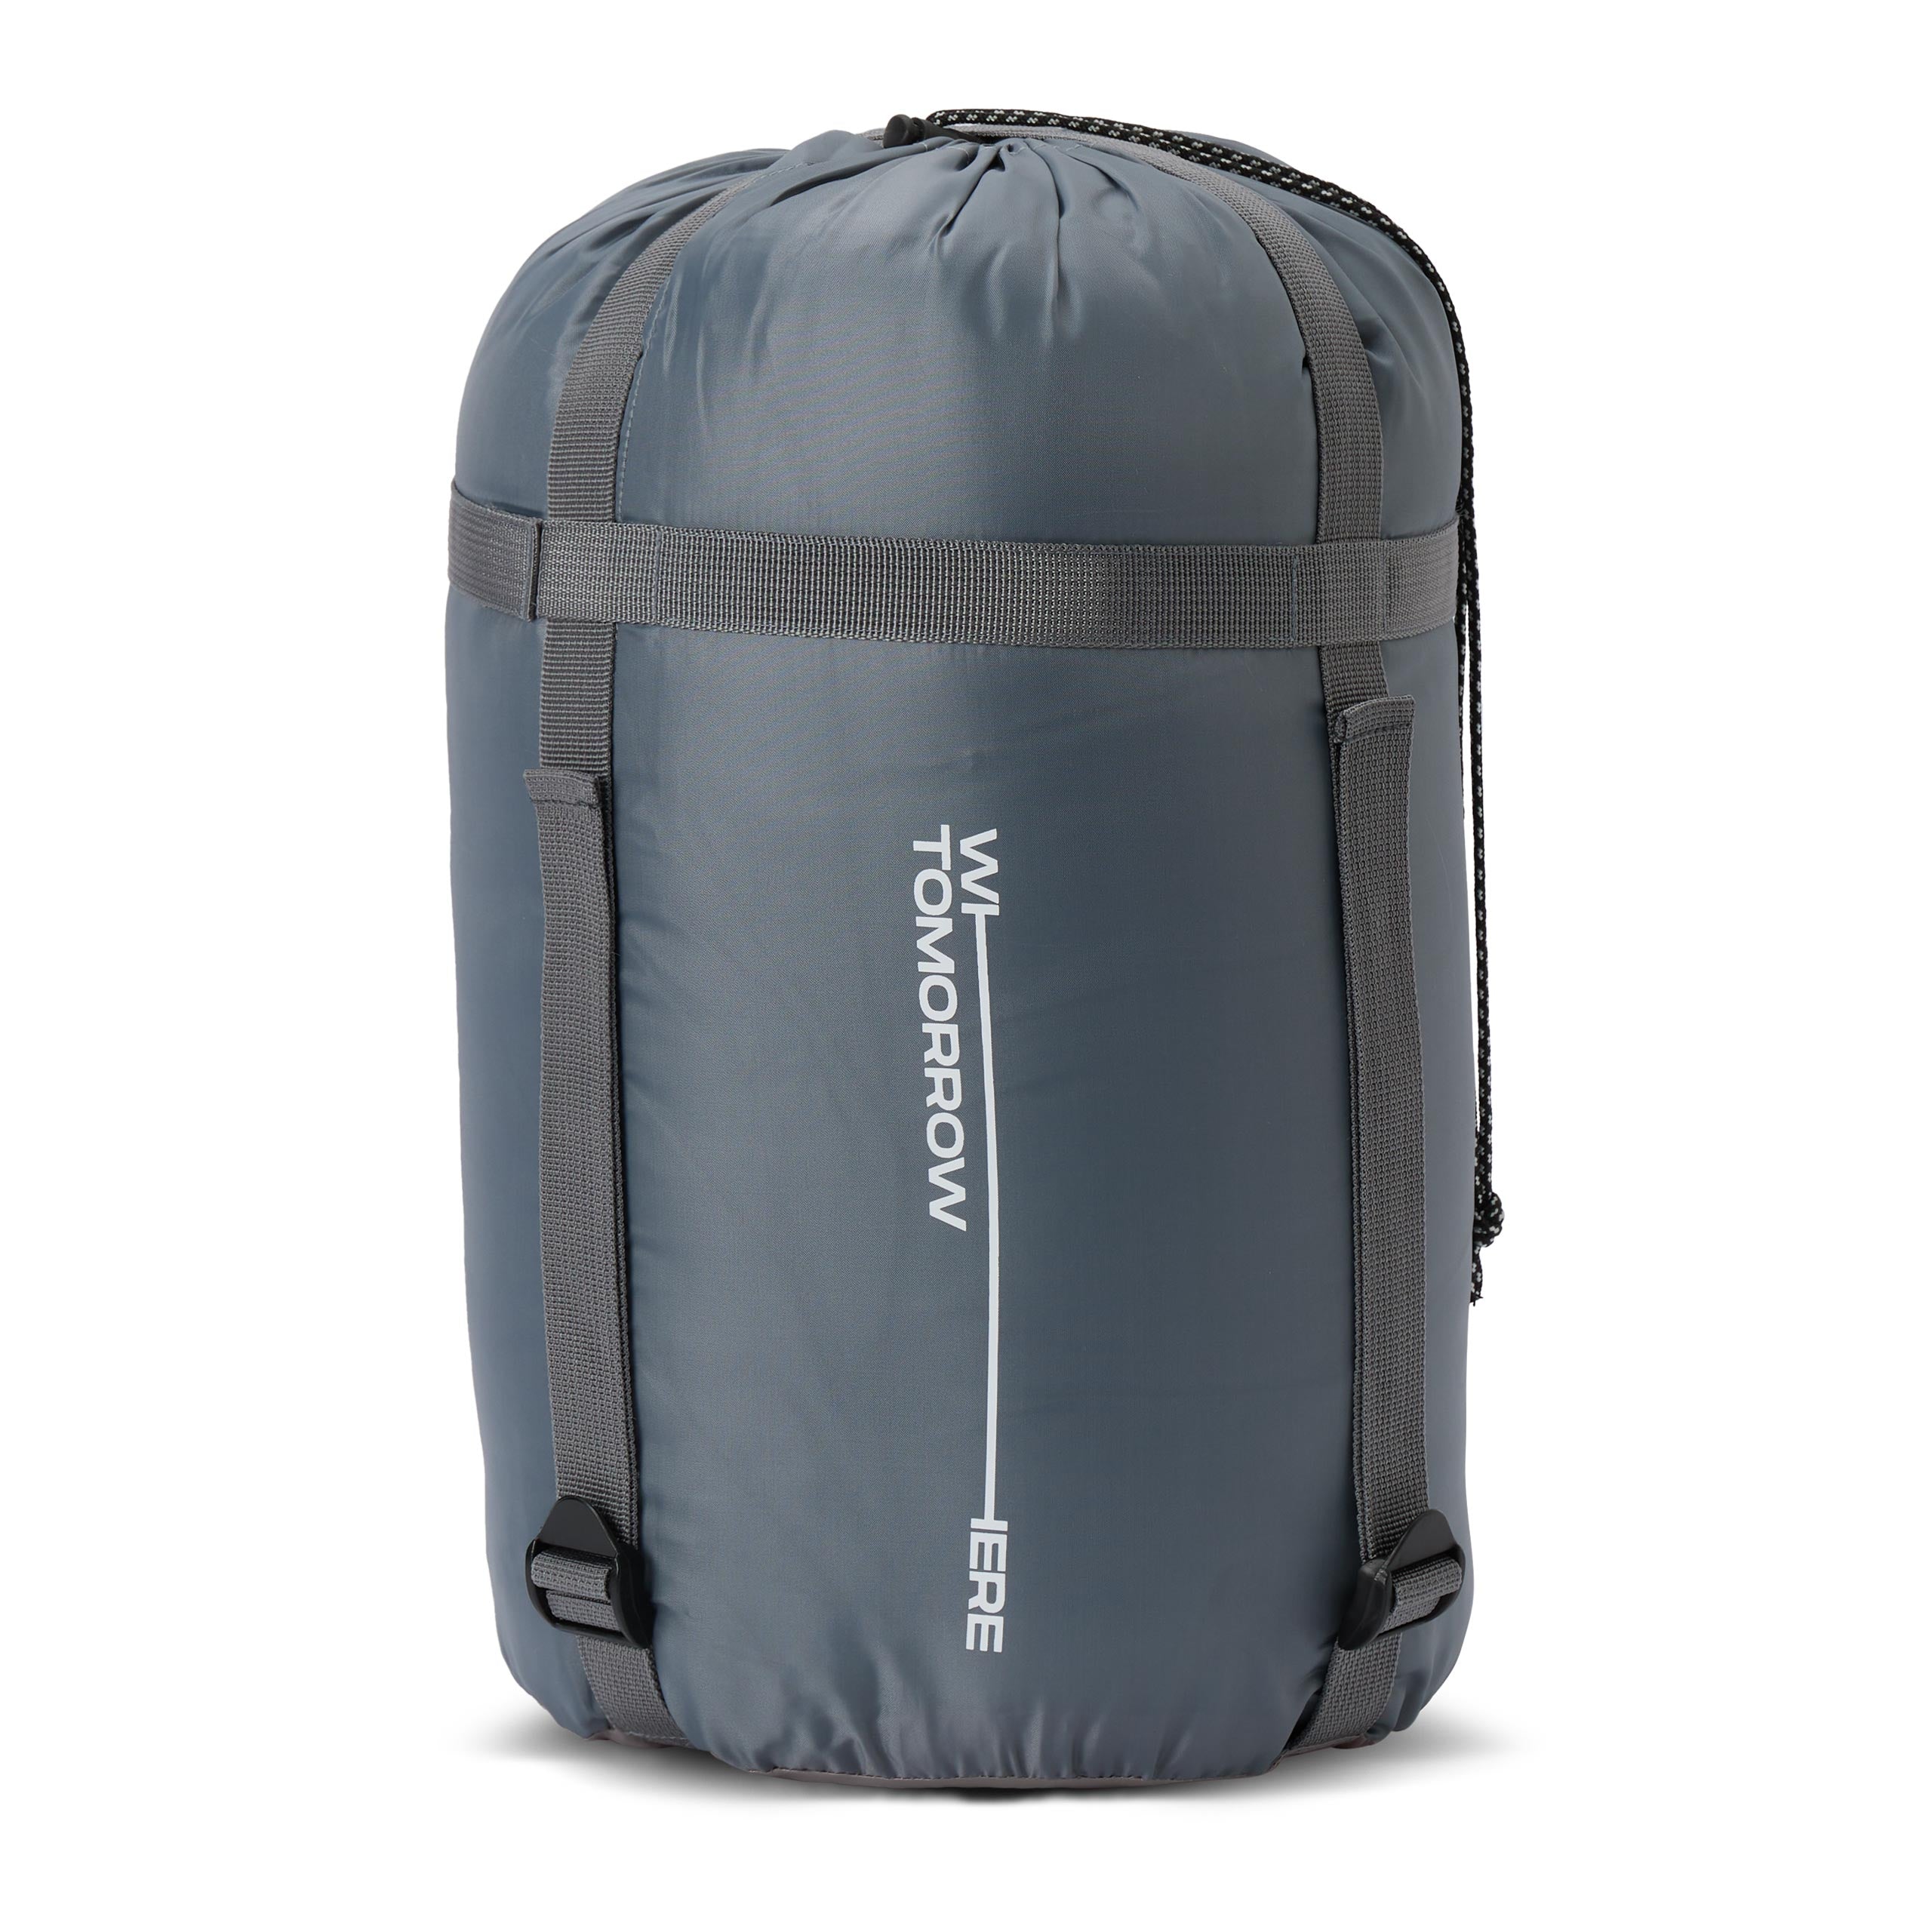 Camping Schlafsack Classic - Mumienschlafsack mit Tasche - 230 x 80 x 55 cm - Curry